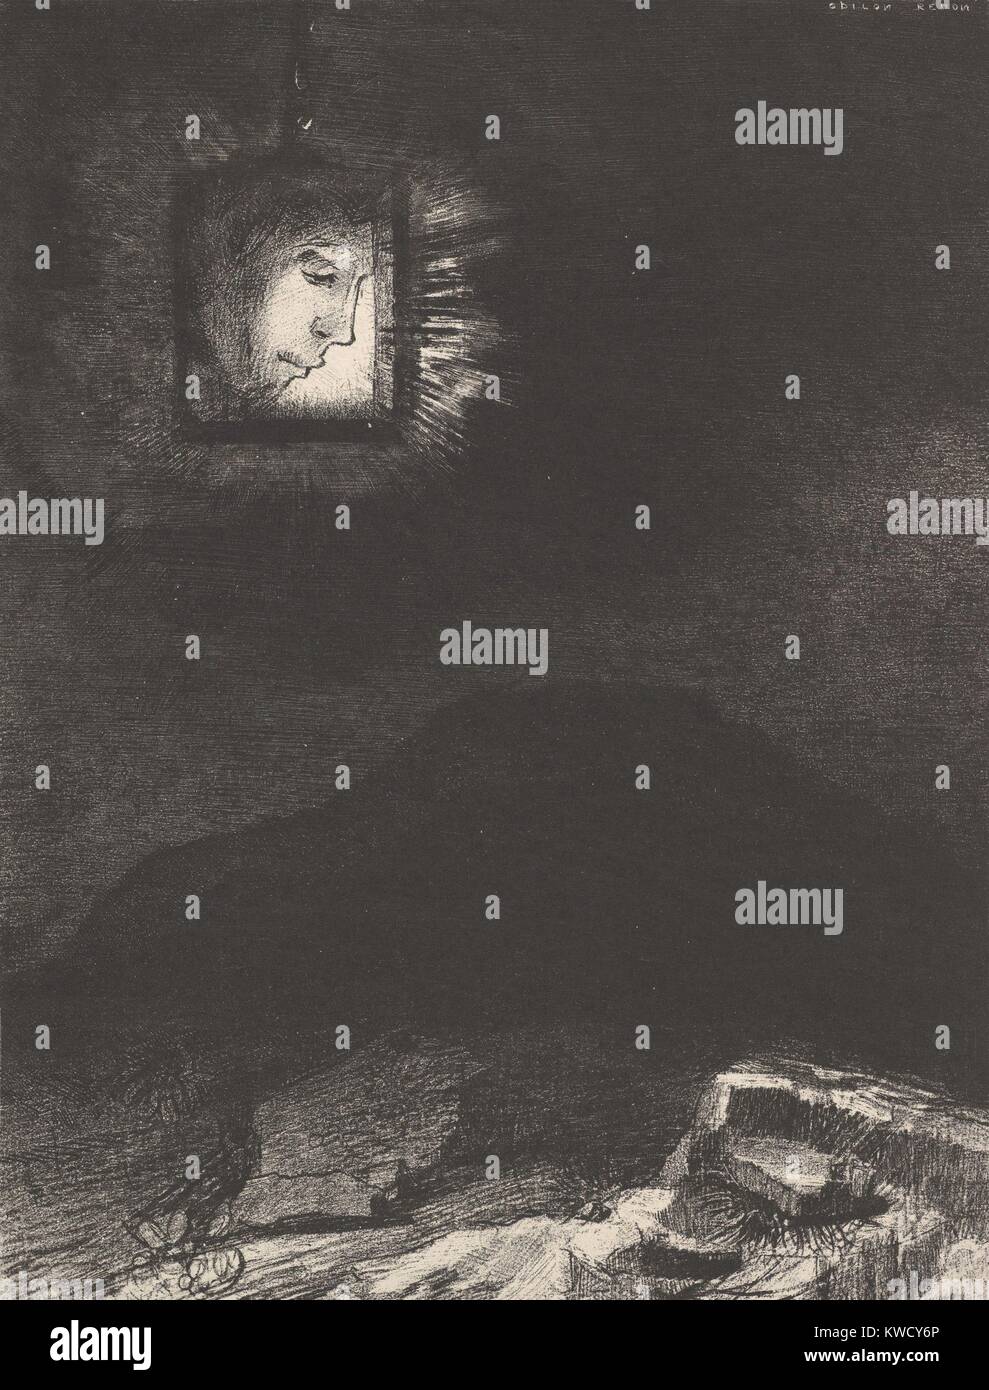 La Vague lueur d'une tête en suspension dans l'espace, d'Odilon Redon, 1891, le français symbolisme imprimer. Cette lithographie originale définit un portrait de profil au-dessus d'un paysage sombre (BSLOC 2017 5 130) Banque D'Images